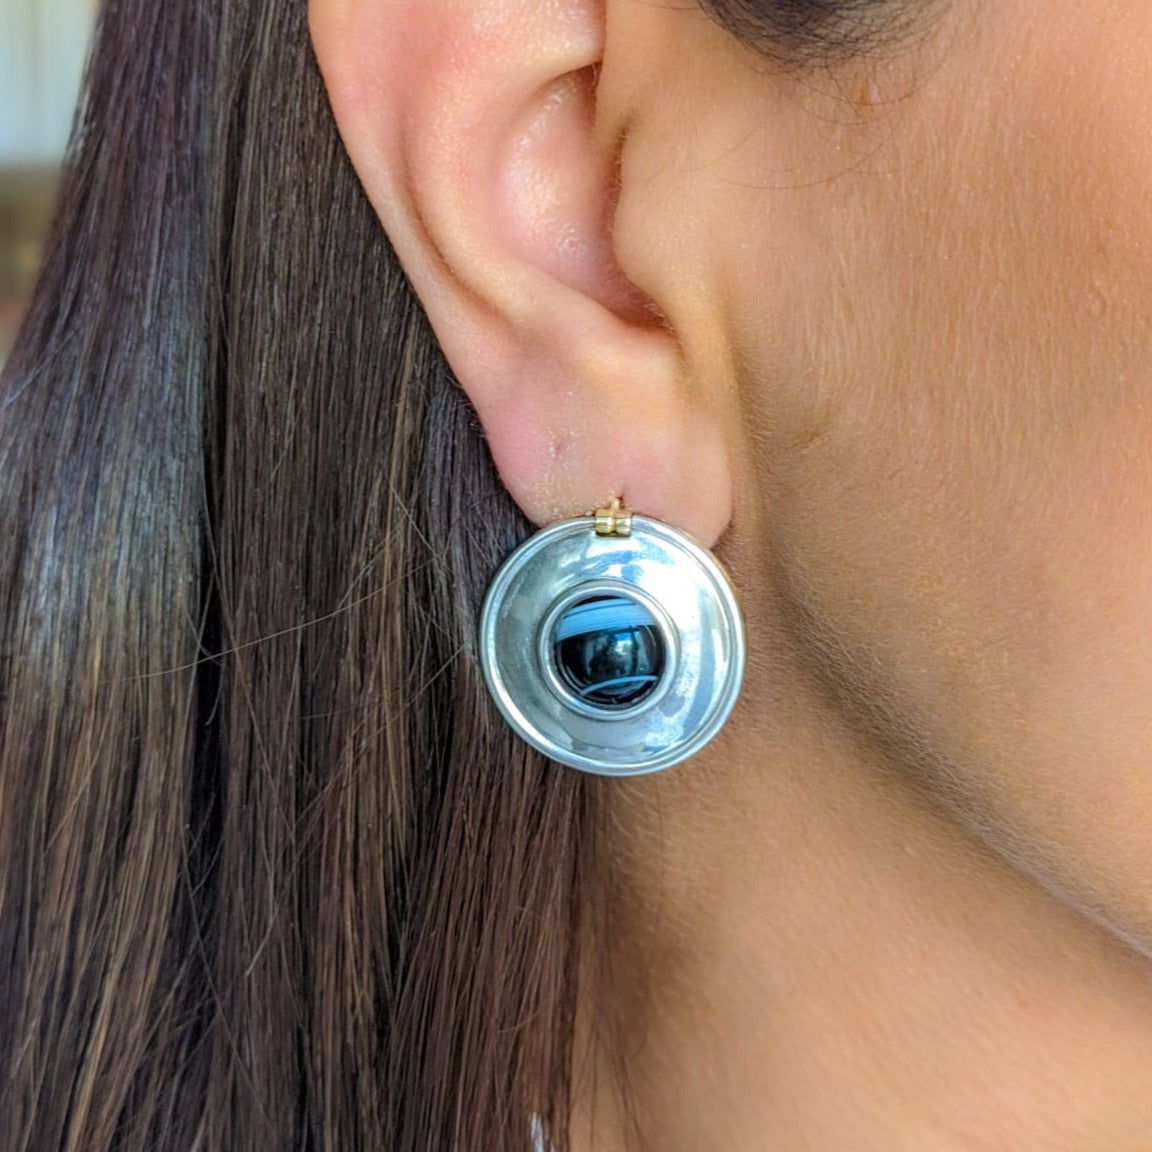 Vintage reversible earrings worn on the silver side on a woman’s ear.